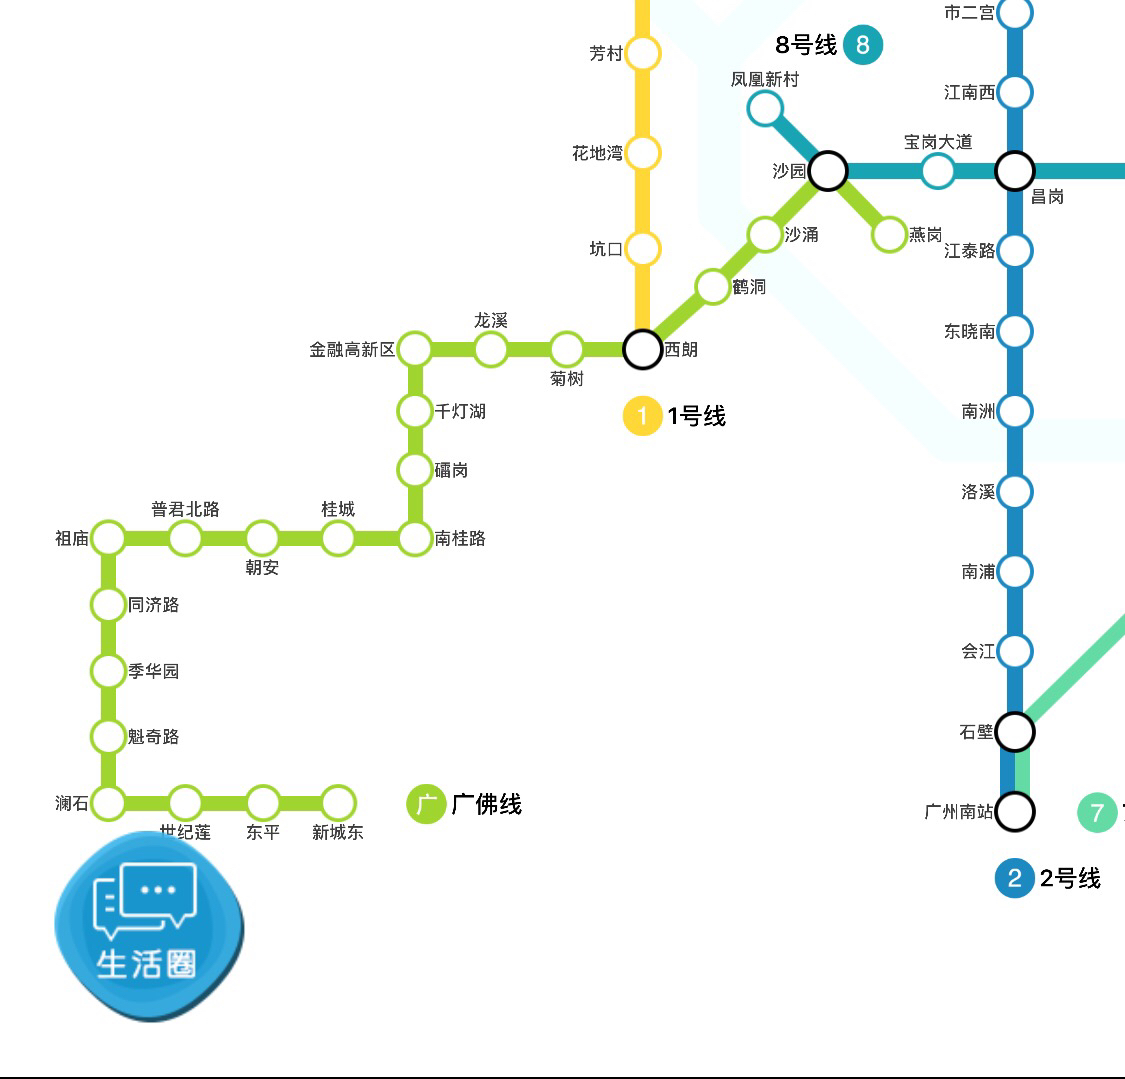 广州有到佛山的地铁吗?